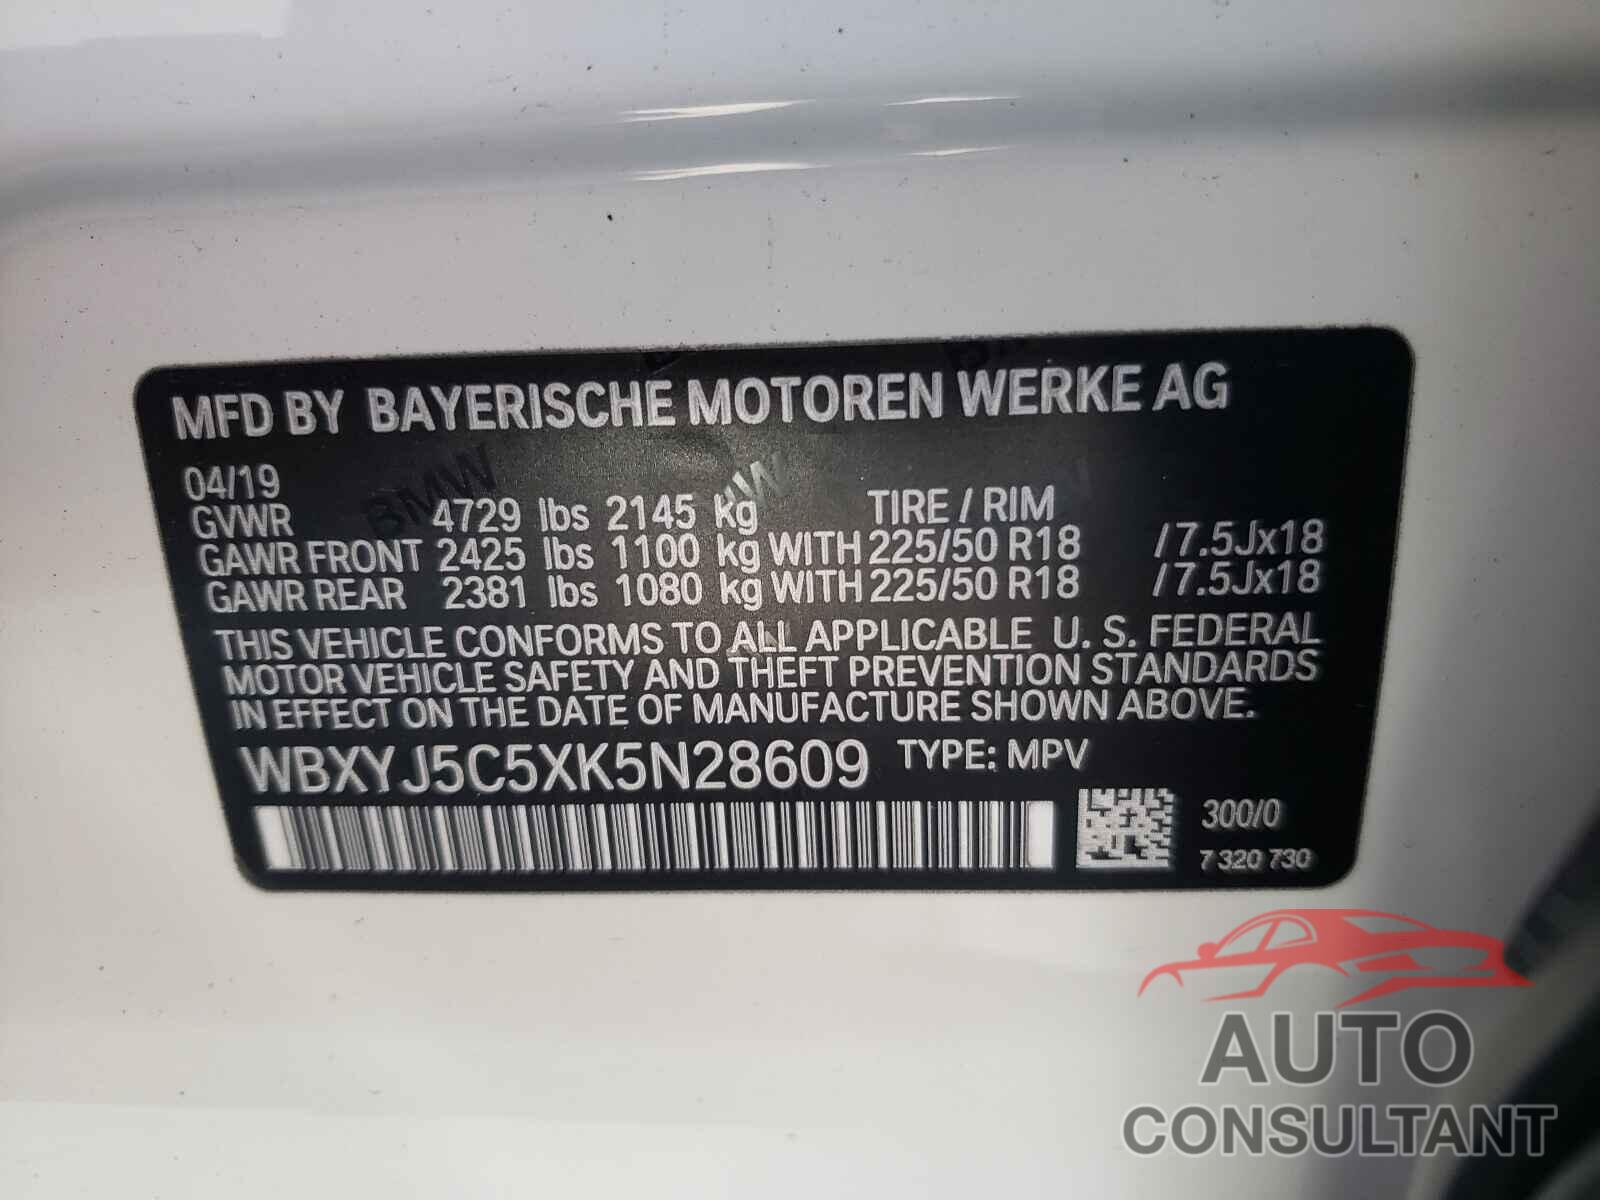 BMW X2 2019 - WBXYJ5C5XK5N28609